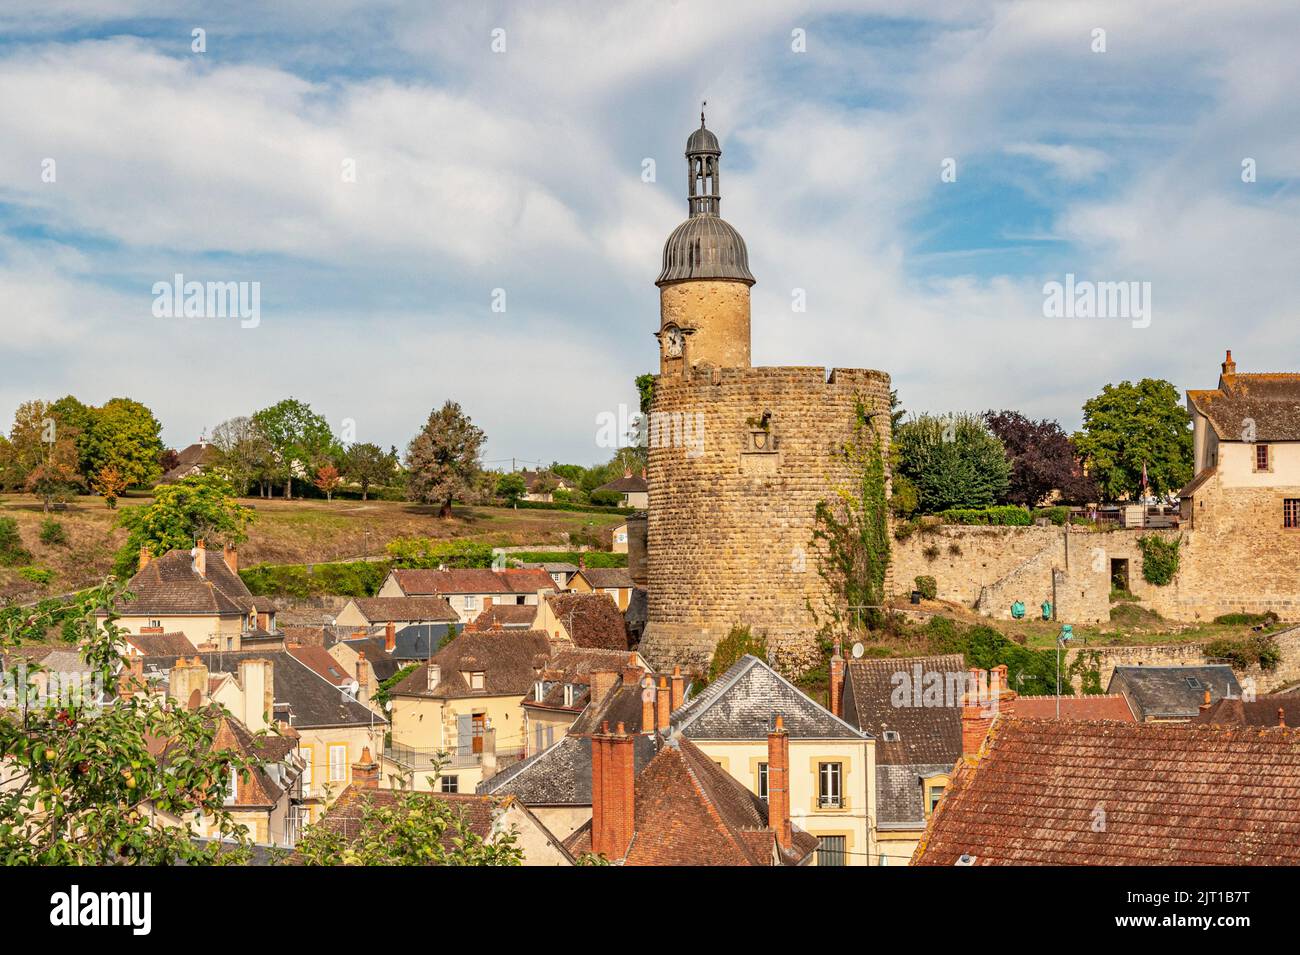 Una vez una impresionante fortaleza con 15 torres, sólo 3 torres sobrevivieron y hoy dominan el horizonte de Bourbon-l'Archambault en Allier, Francia Foto de stock